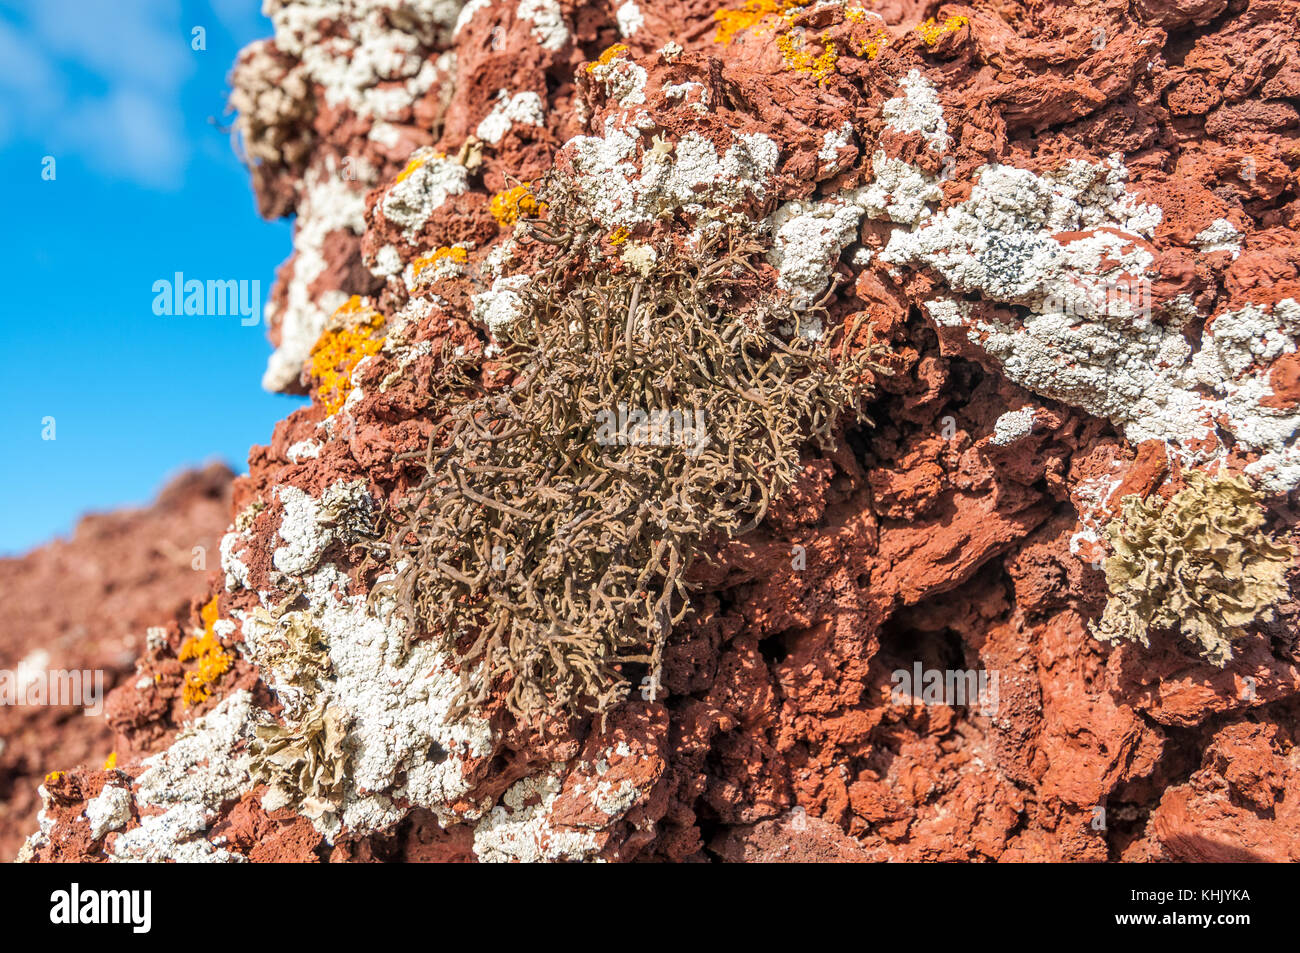 green lichens in the top of Montaña Bermeja, La Graciosa, Canary Islands, Spain Stock Photo